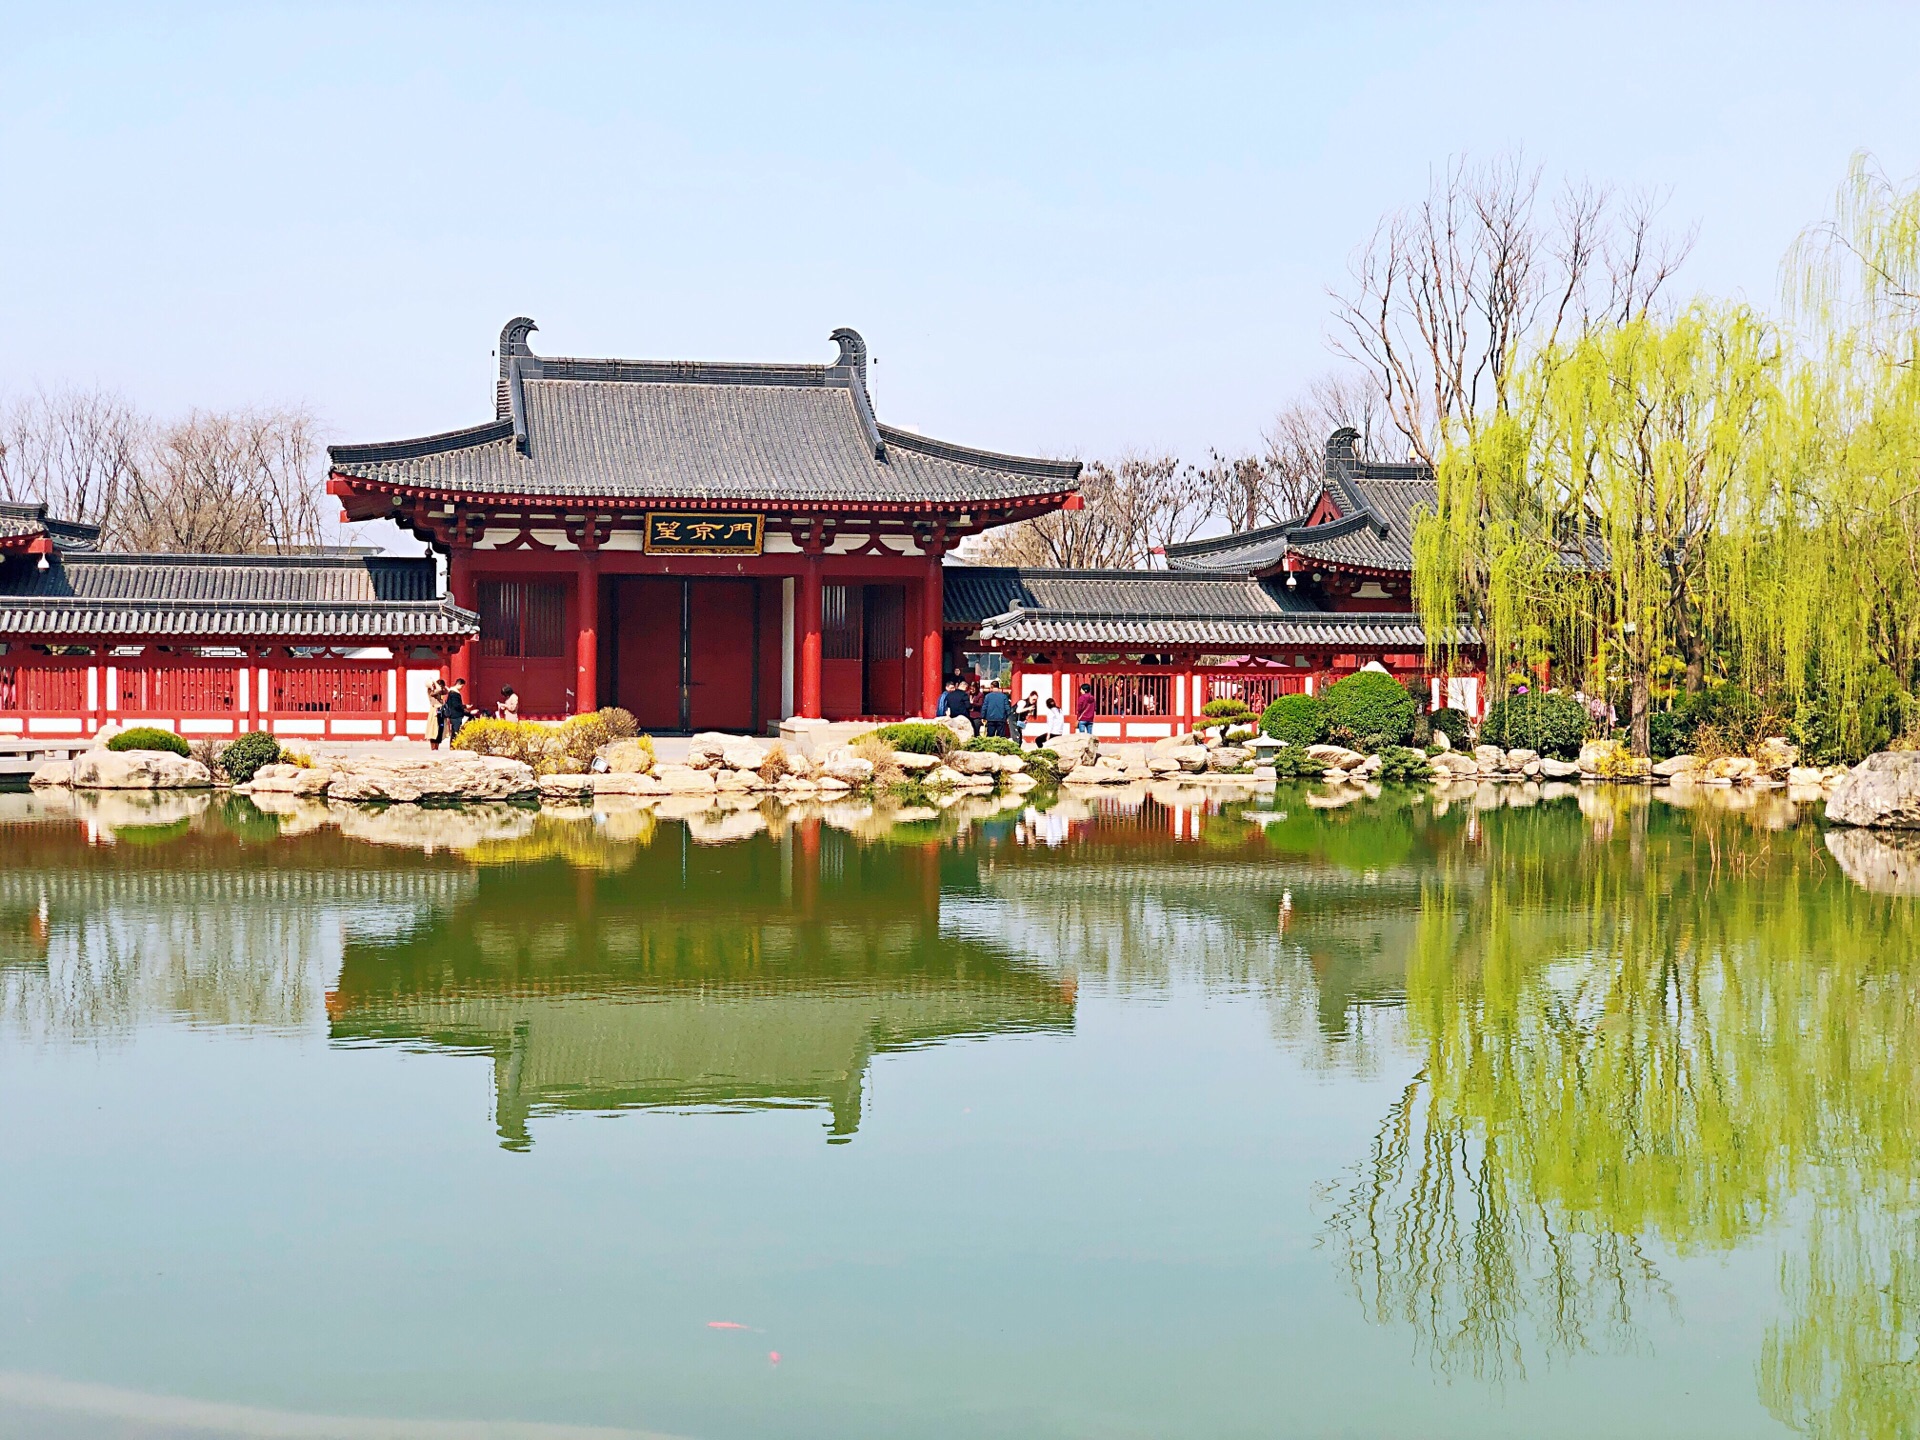 【携程攻略】西安华清宫景点,被称为中国四大皇家园林的华清宫,始建于